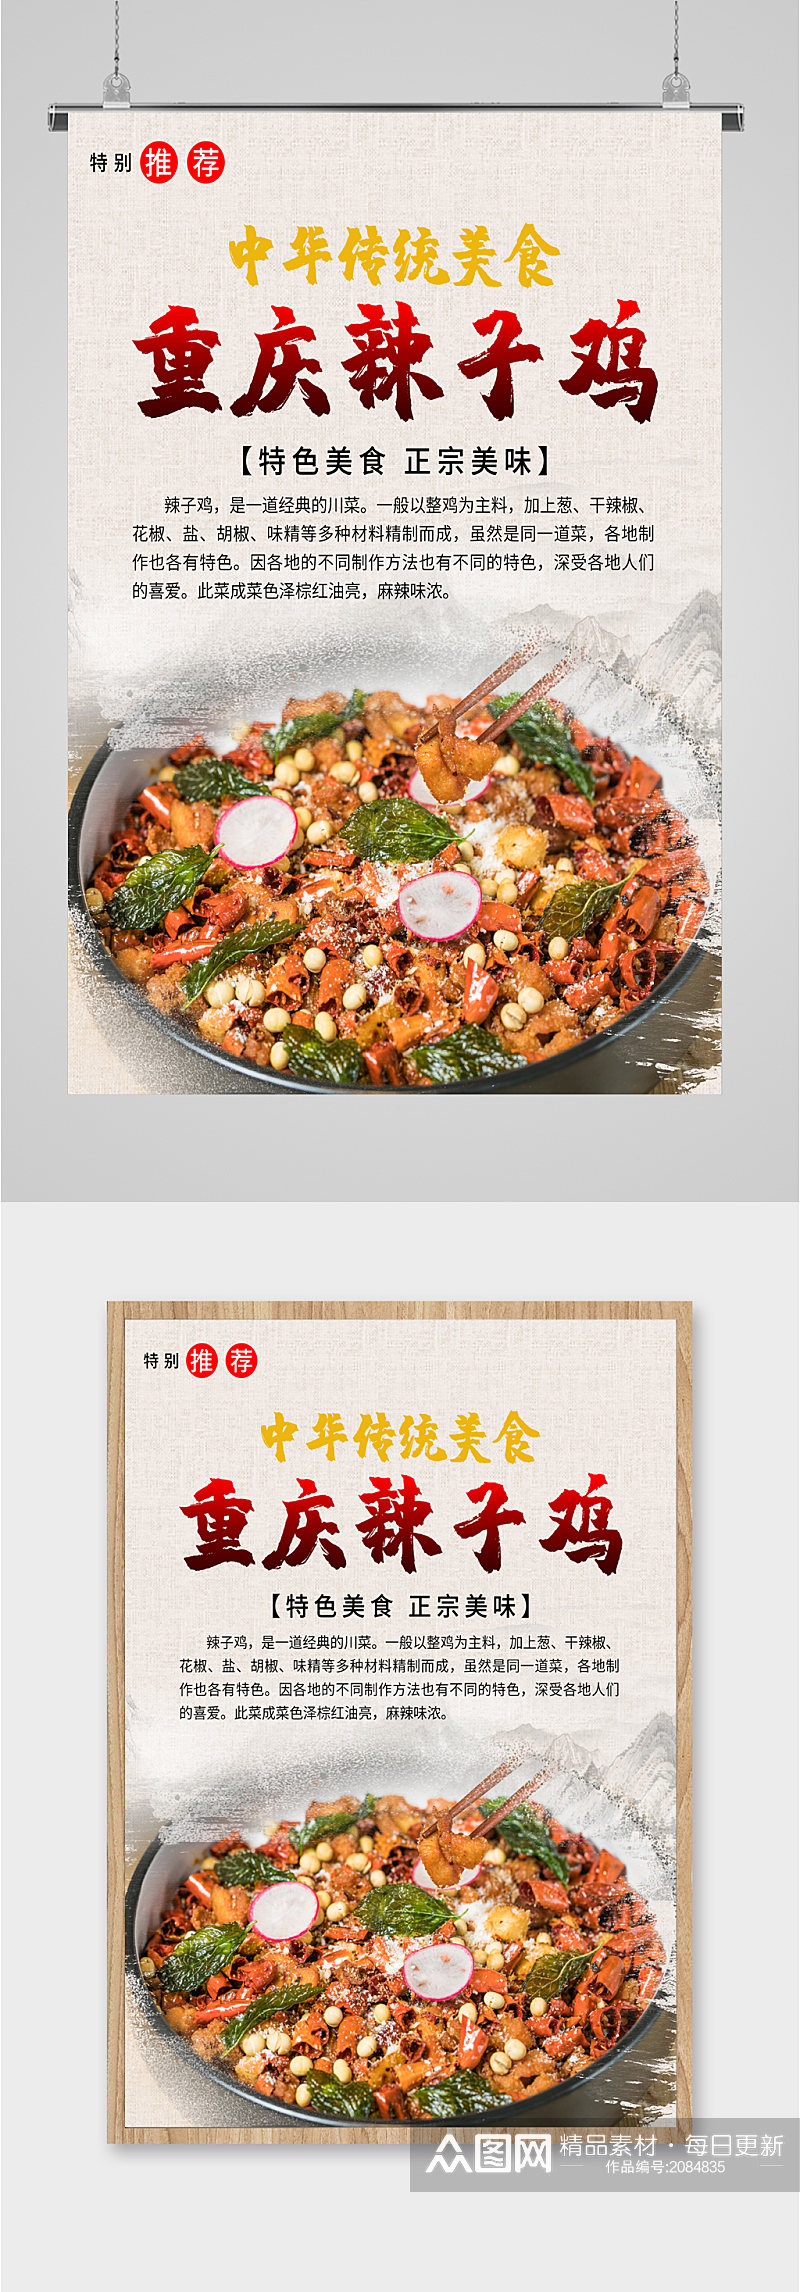 中华美食辣子鸡海报素材